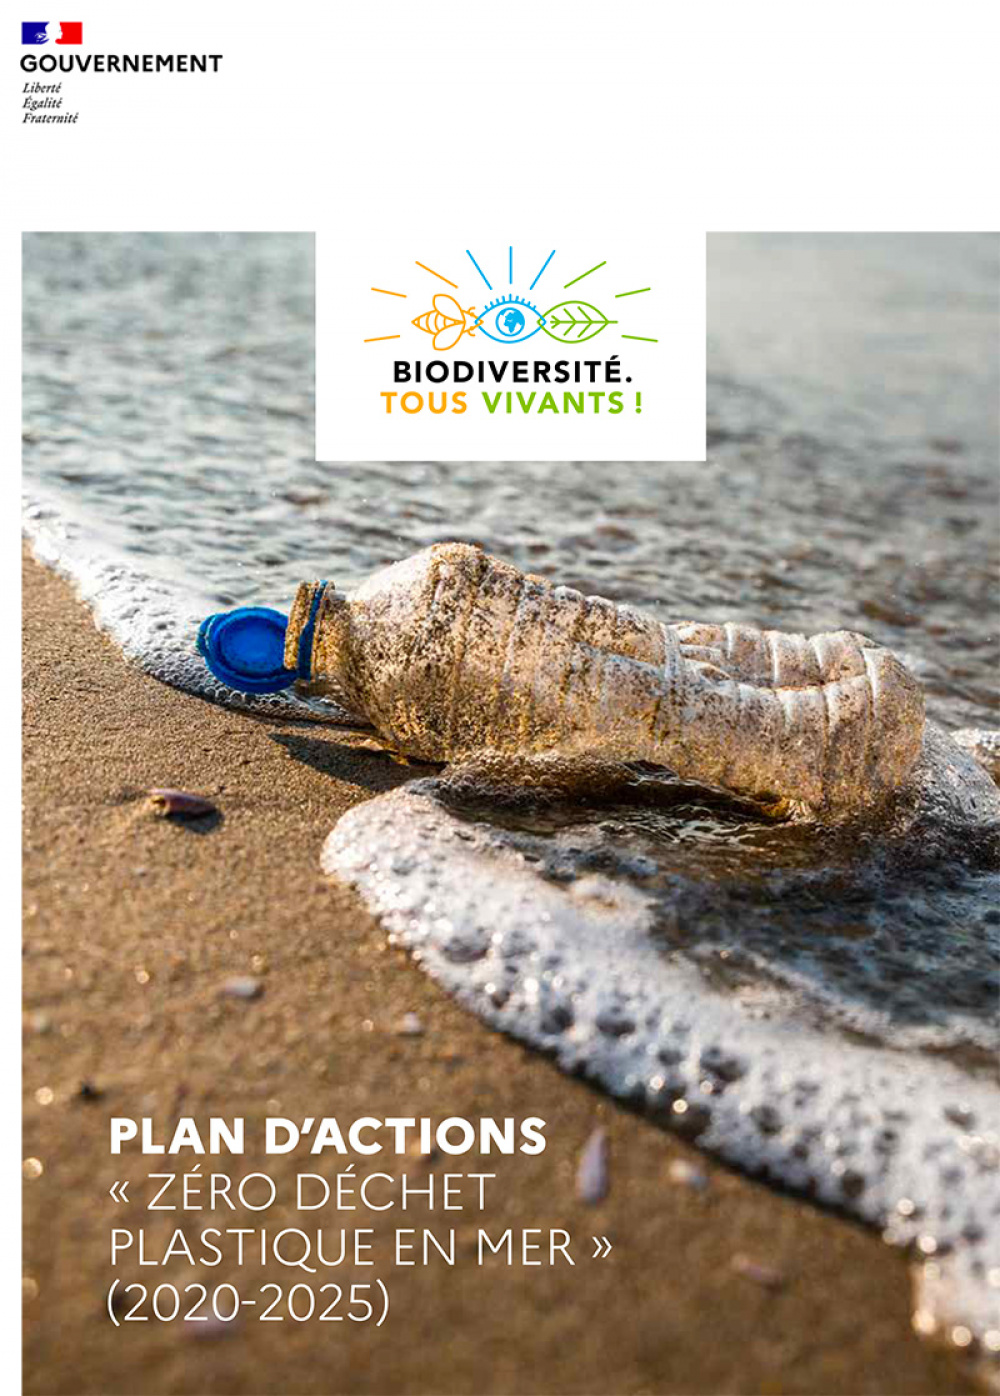 Plan d'actions "Zéro Déchet Plastique en mer" (2020-2025)